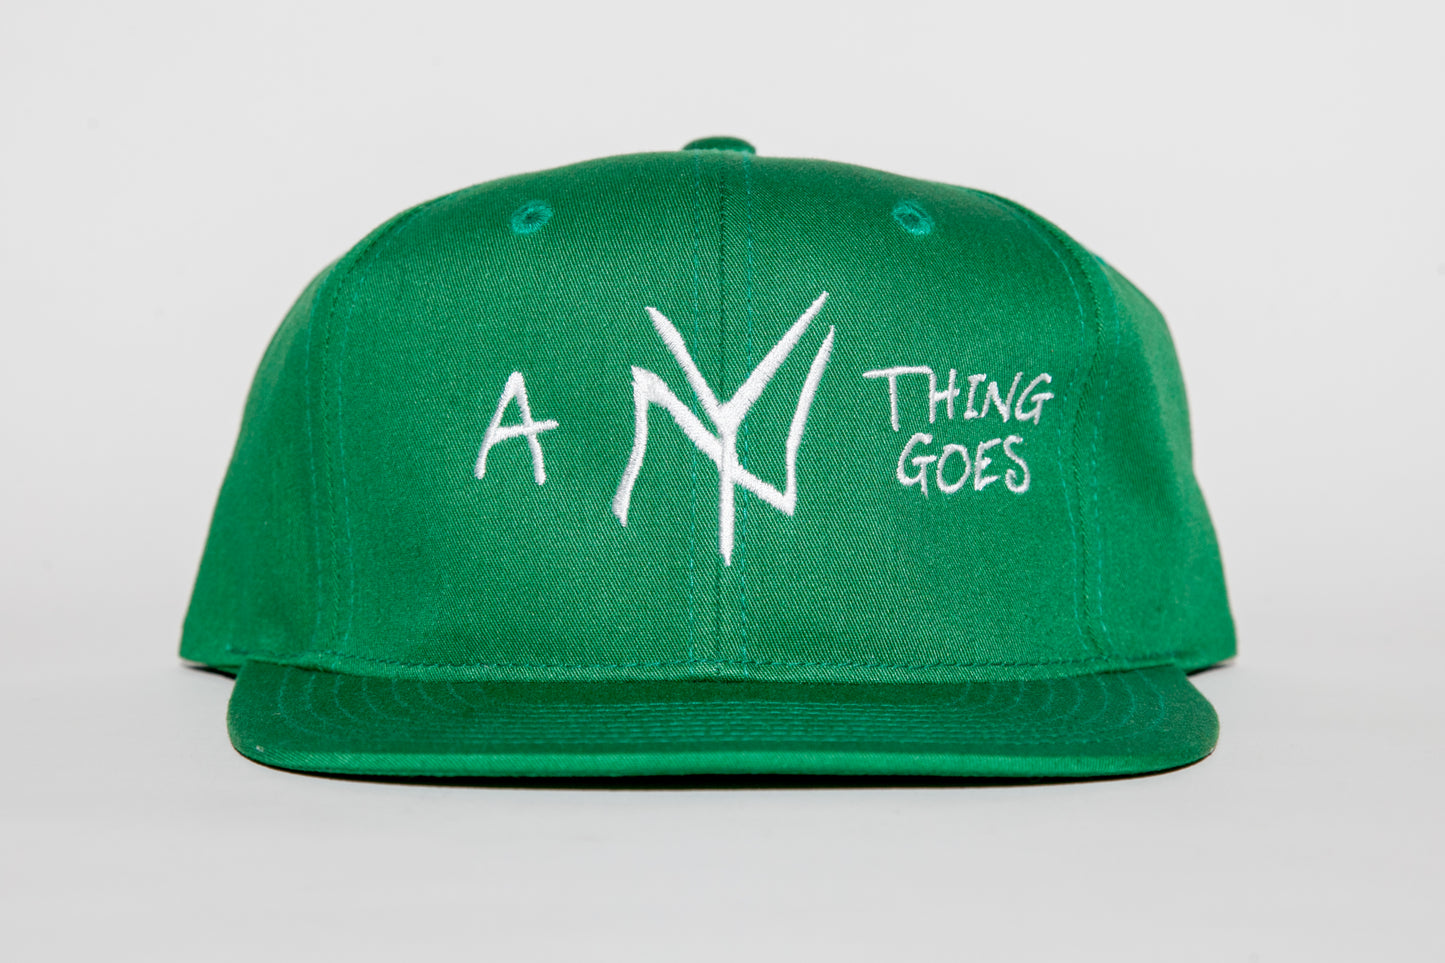 A NY THING GOES BASEBALL CAP